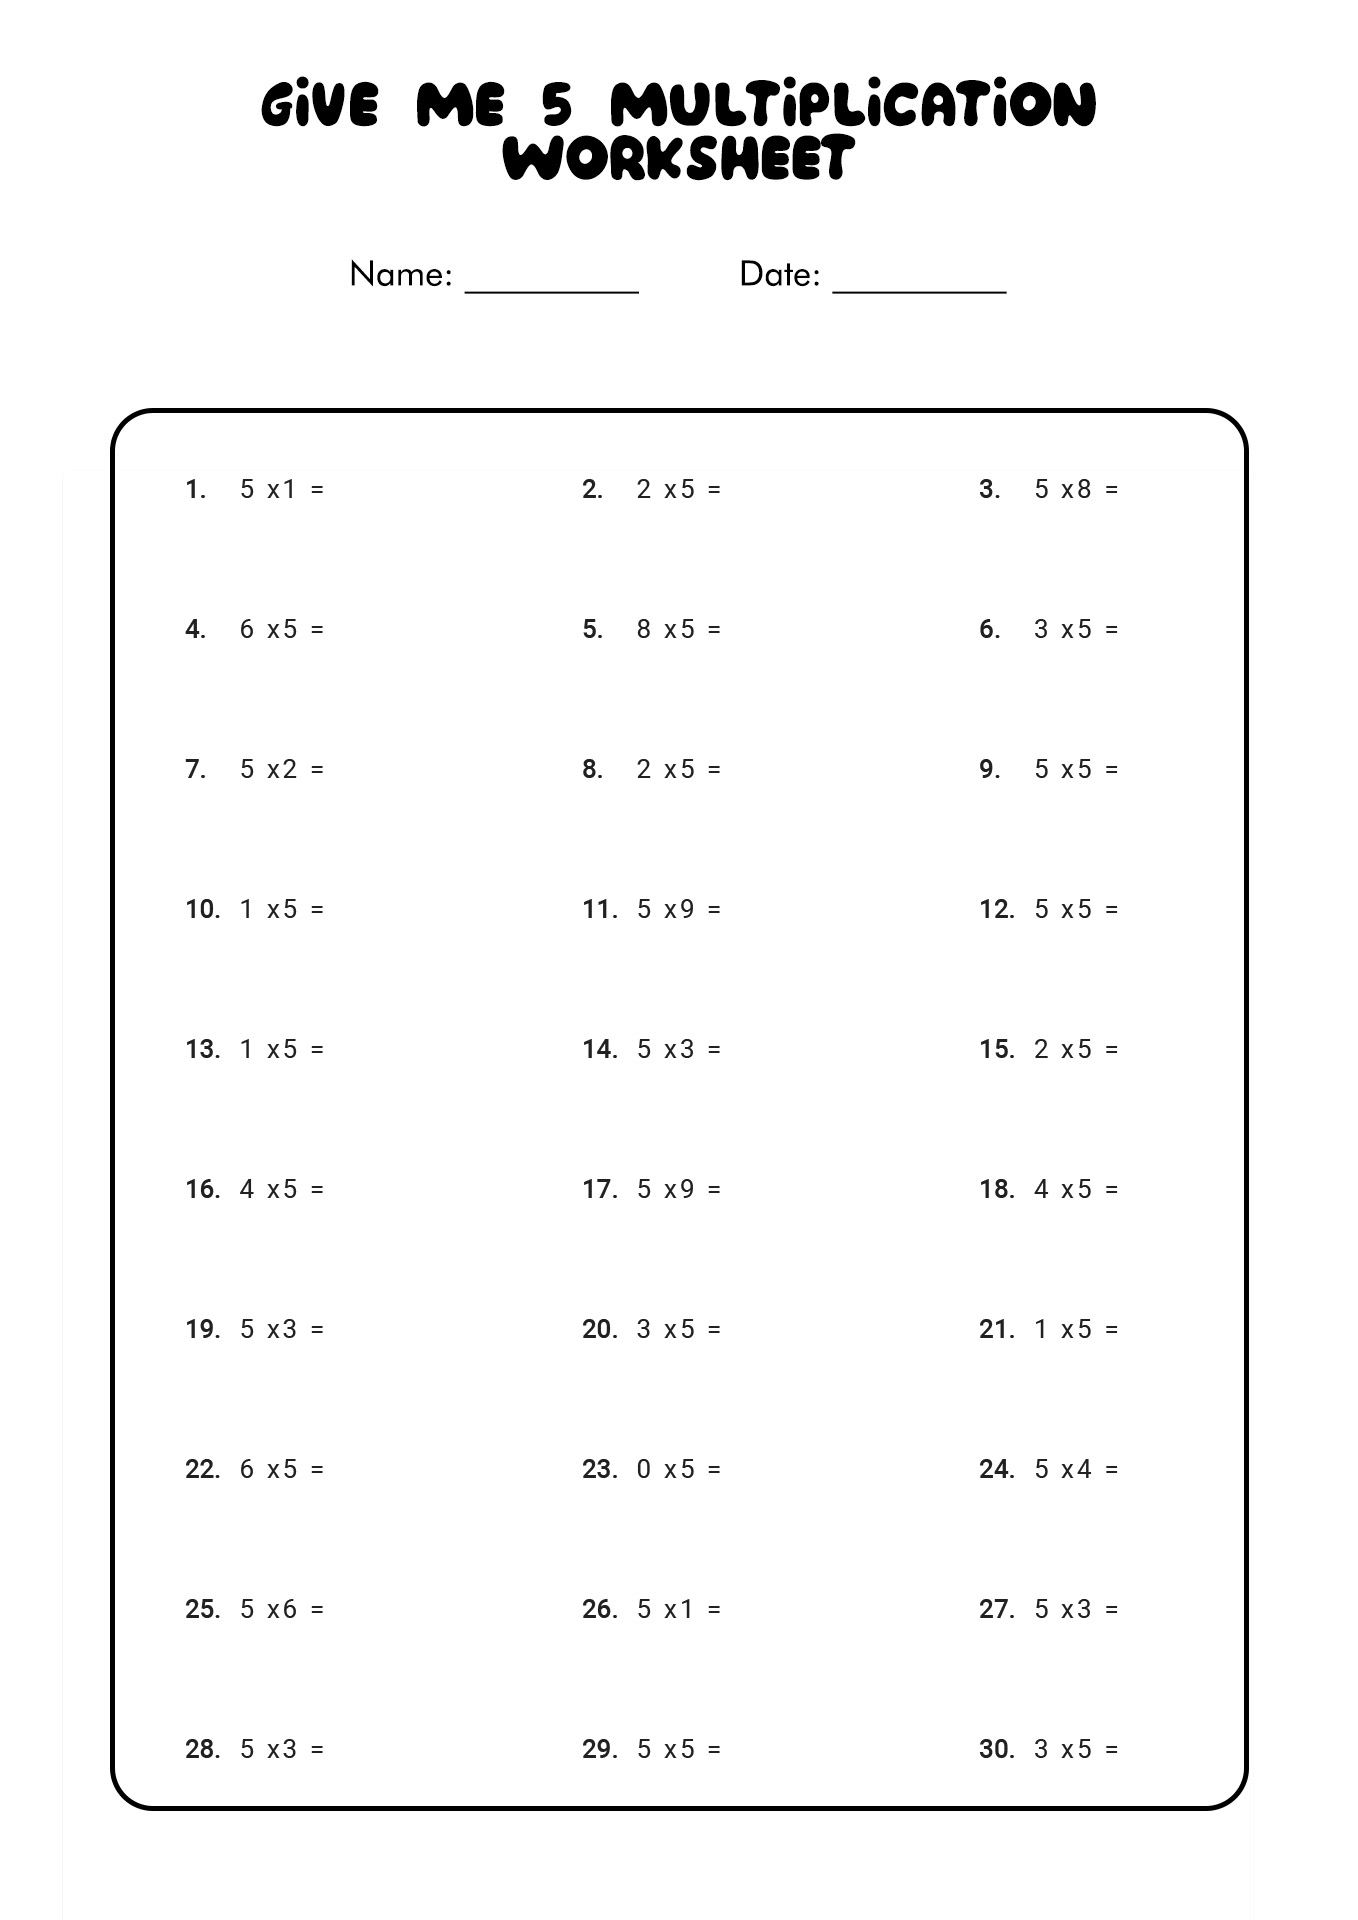 Give Me 5 Multiplication Worksheet Image